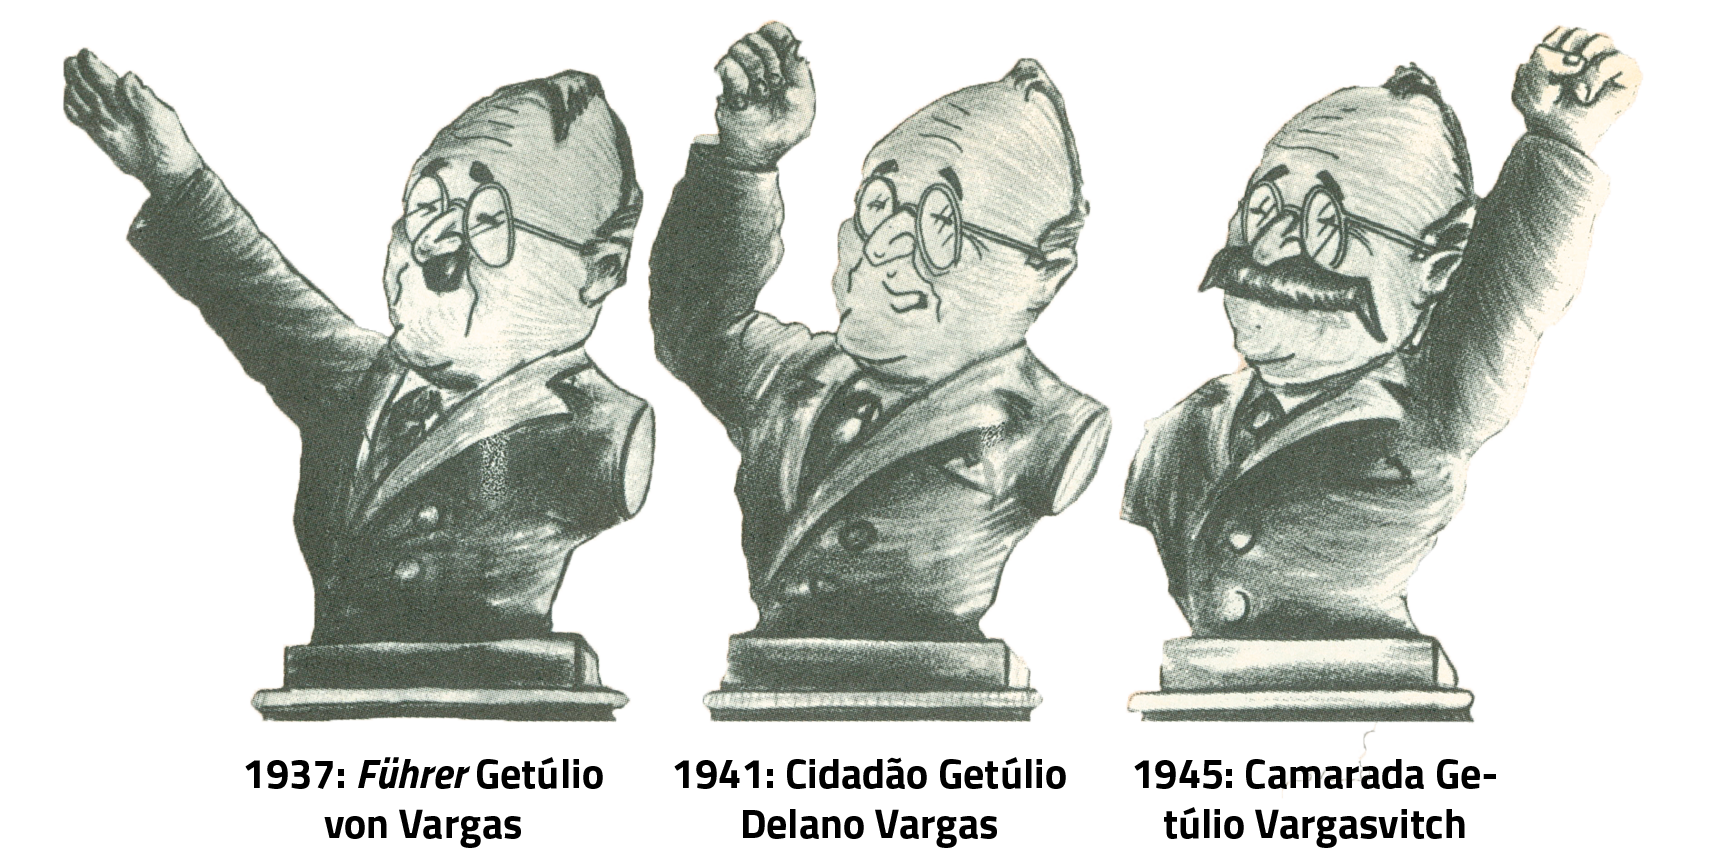 Charge em preto e branco. Três bustos de Getúlio Vargas com a indicação de três anos diferentes.
À esquerda, busto de Vargas com o cabelo penteado de lado, óculos e um bigode pequeno e curto. Está com o braço direito levantado e a mão estendida, espalmada para baixo. Veste terno e gravata. Embaixo do busto, a inscrição: 1937: Führer Getúlio von Vargas.
No centro, busto de vargas com pouco cabelo, penteado para trás, sorridente, de óculos. O braço direito está parcialmente levantado, com o punho cerrado. Embaixo, a inscrição: 1941: Cidadão Getúlio Delano Vargas.
À direita, busto de Vargas de cabelos escuros, penteados para trás. Usa óculos e tem um grande bigode escuro. Está com o braço esquerdo levantado e o punho cerrado. Embaixo, a inscrição: 1945: Camarada Getúlio Vargasvitch.